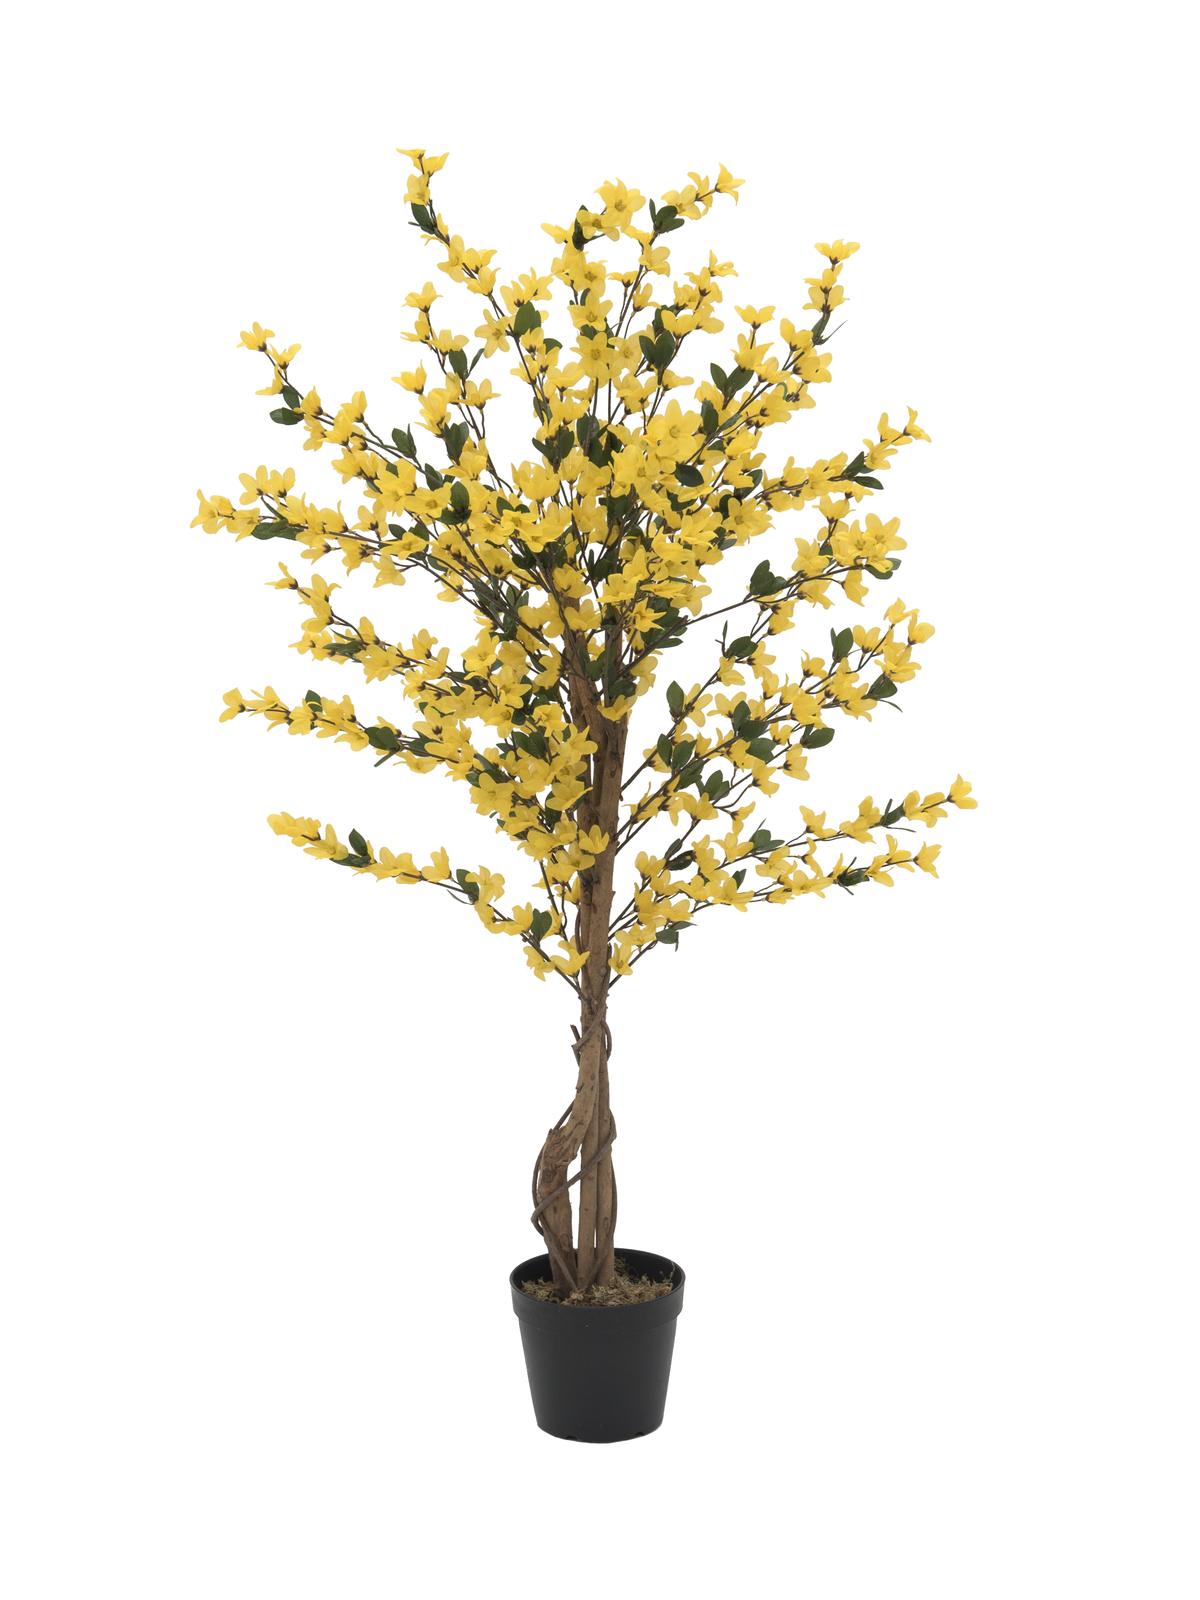 EUROPALMS Forsythienbaum mit 4 Stämmen gelb - 120 cm 